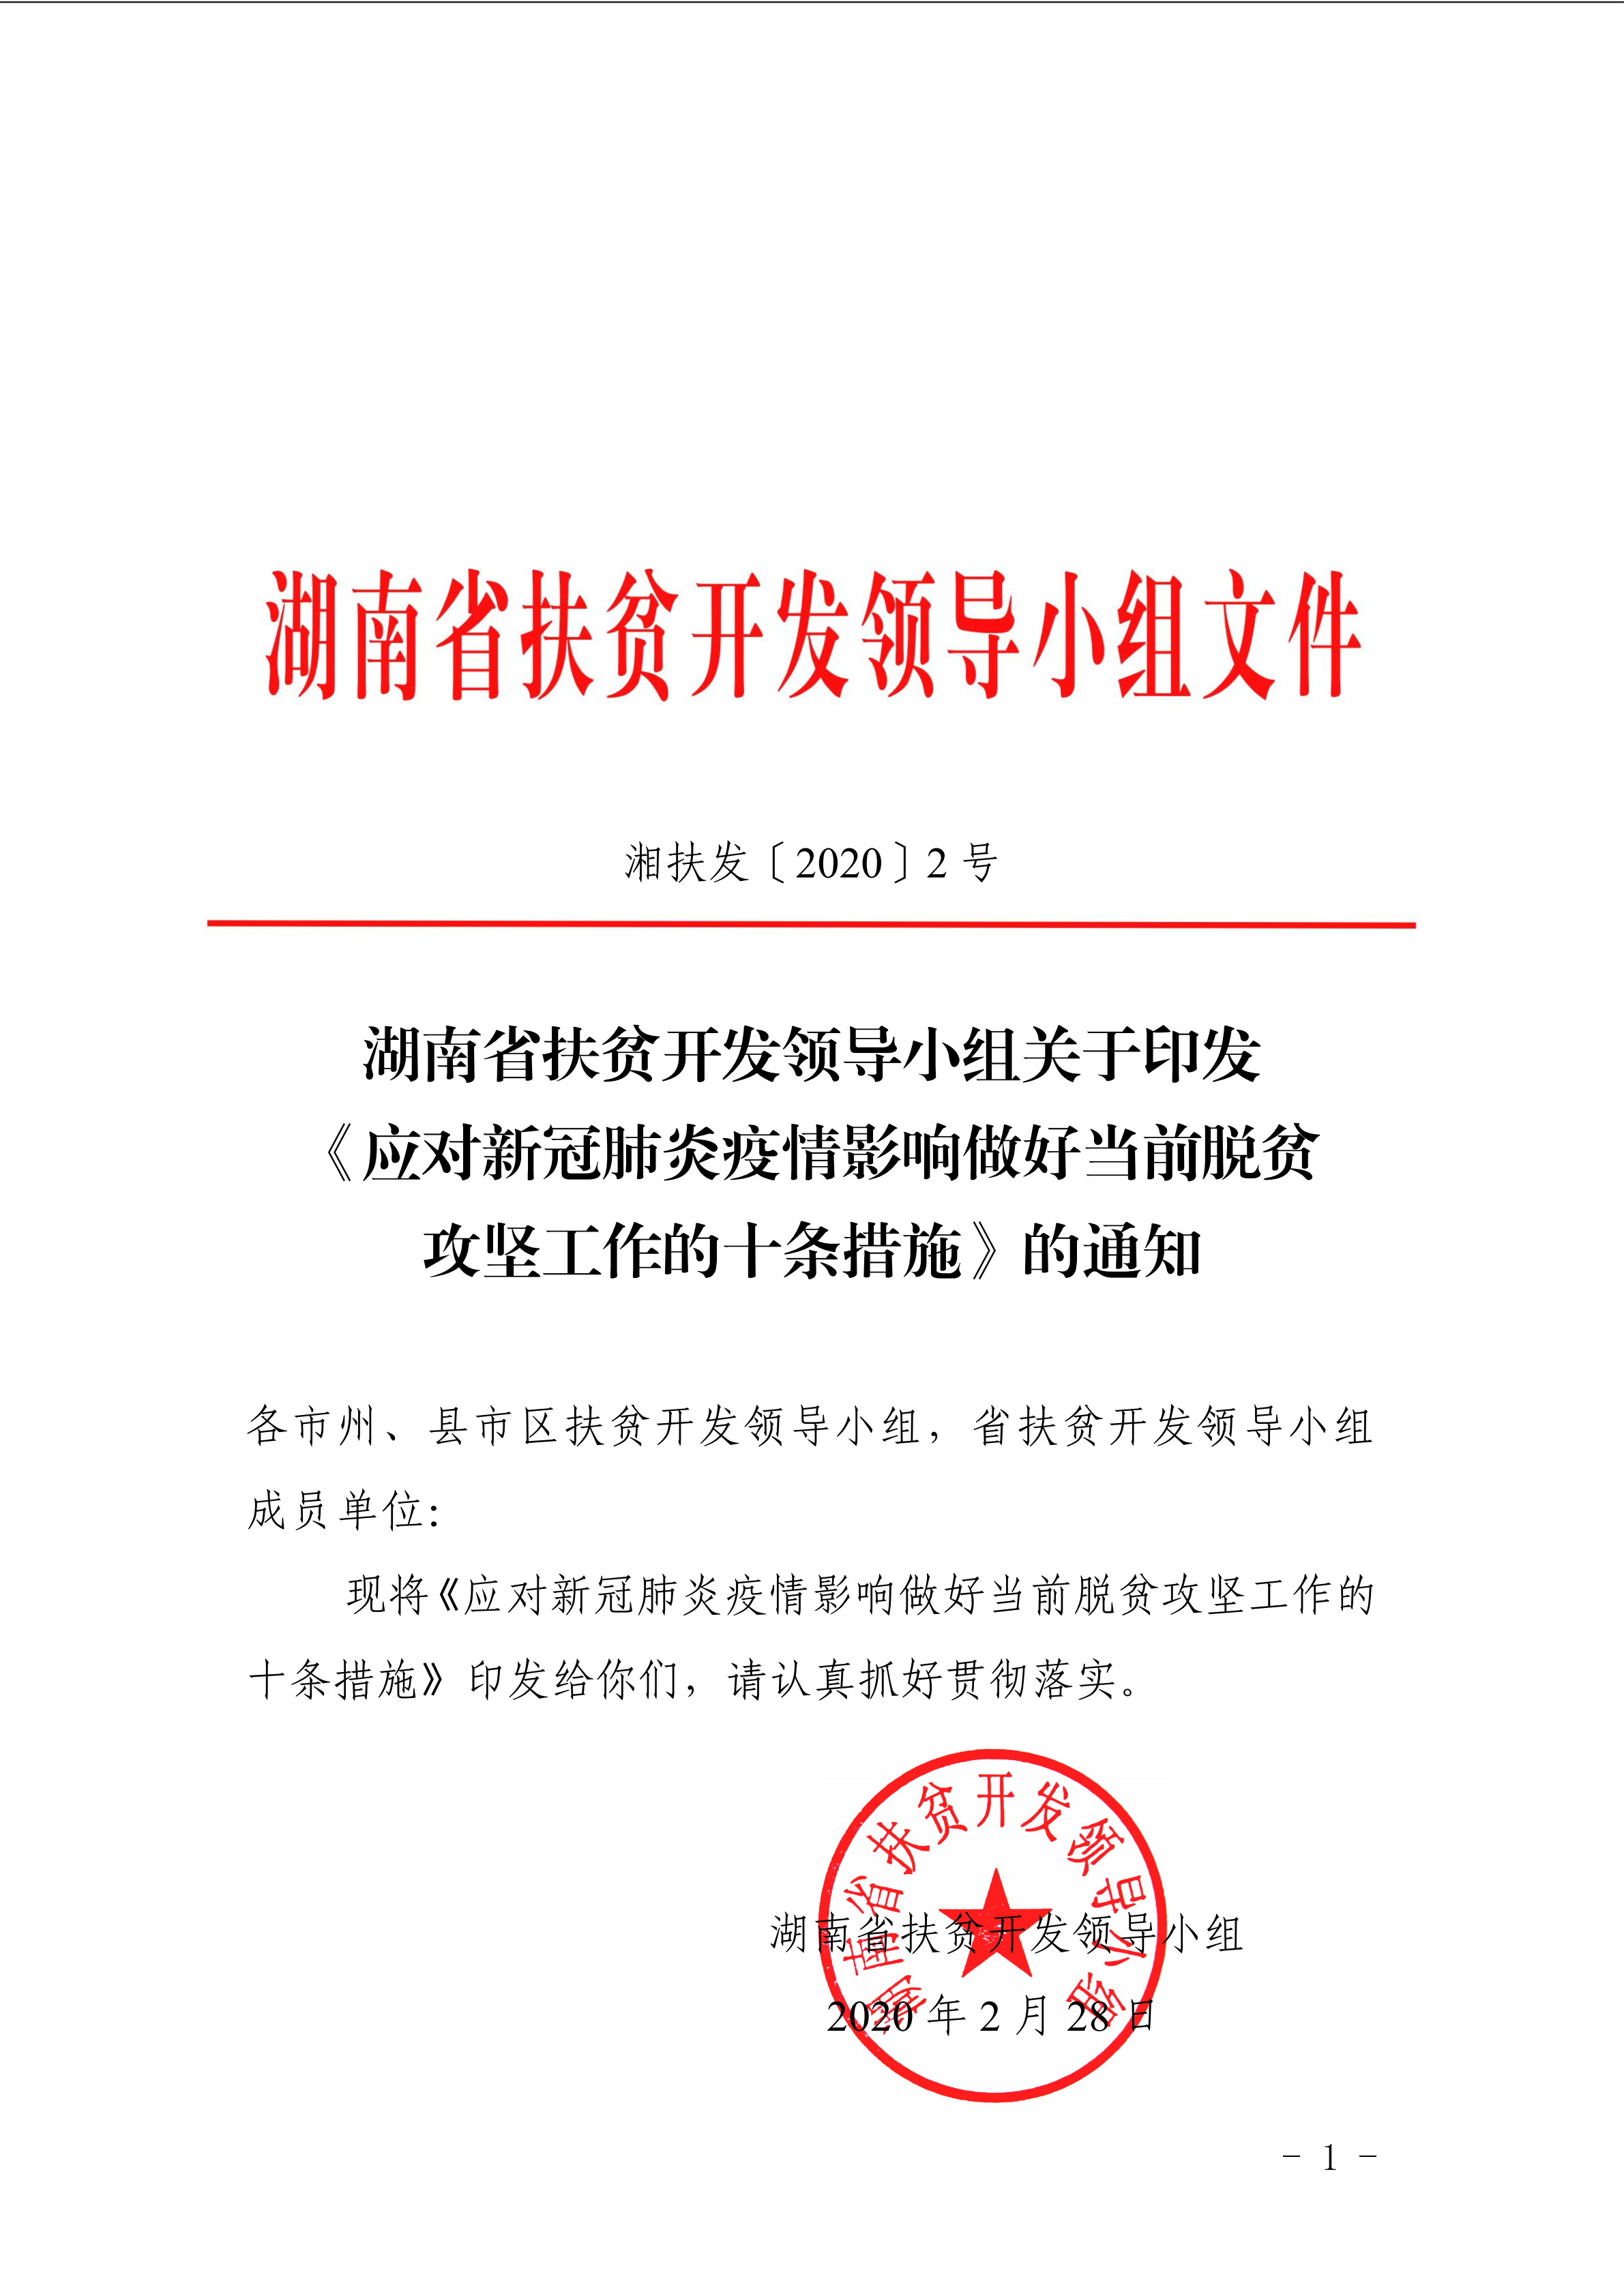 衡南县人民政府门户网站